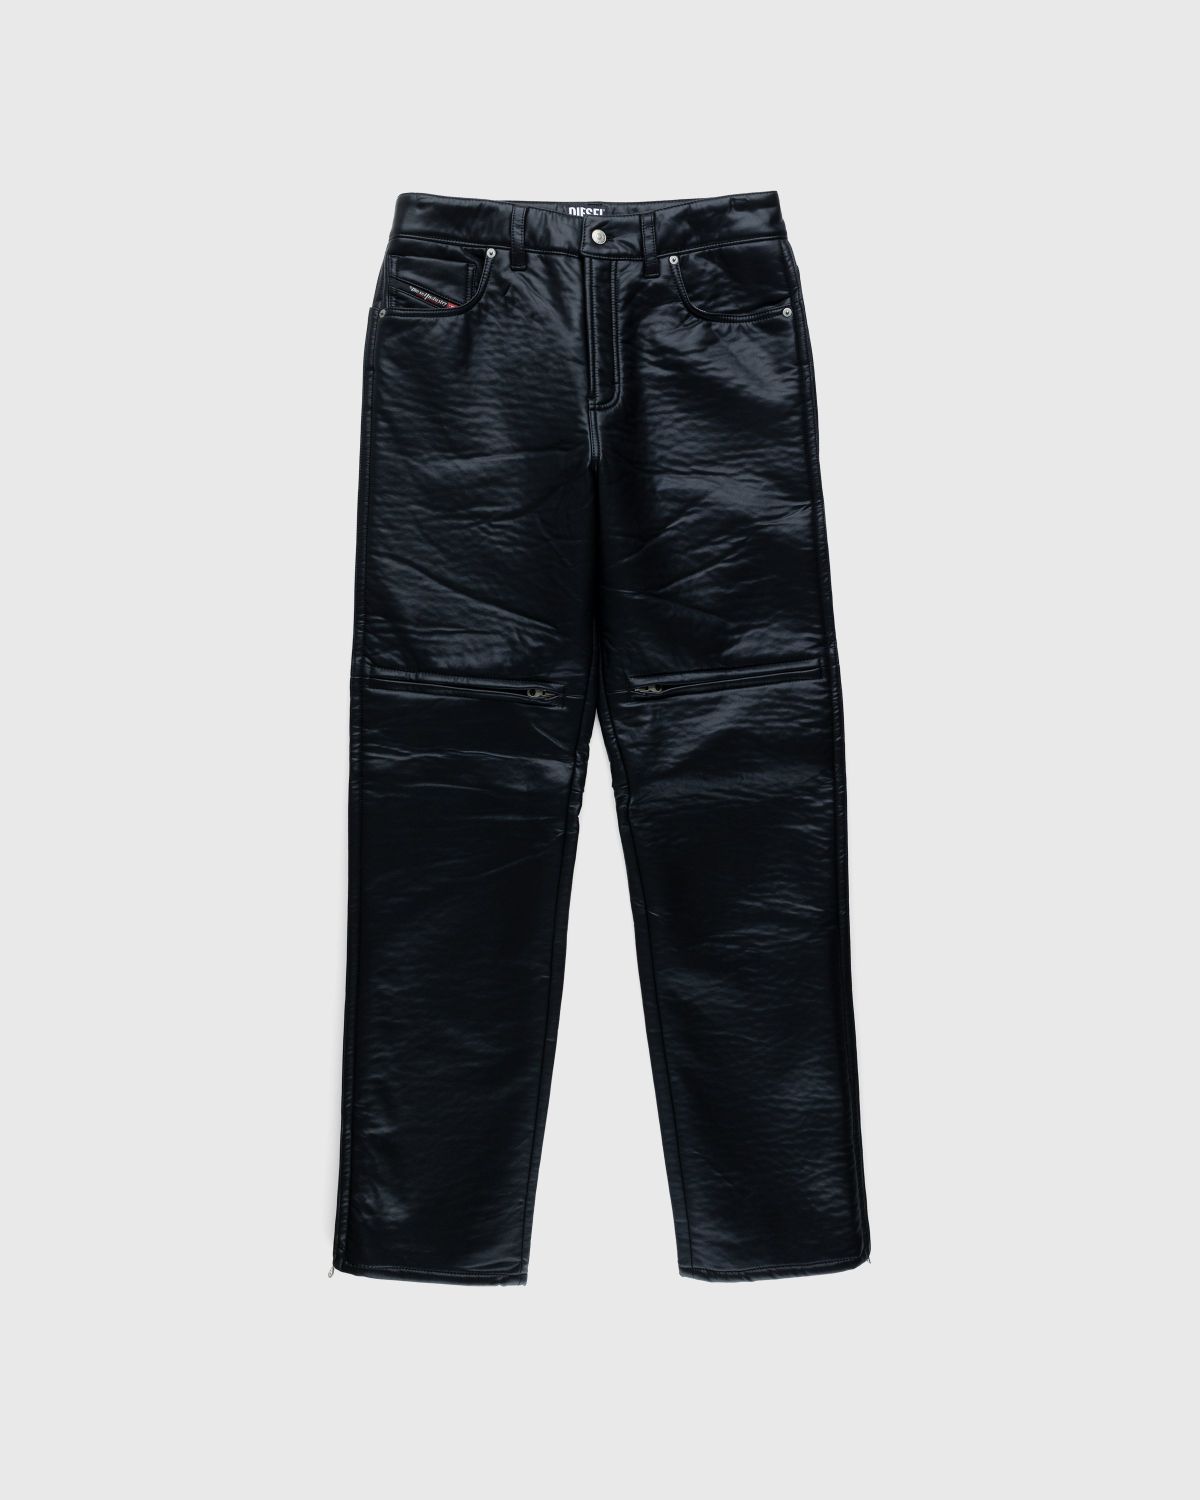 Diesel – Cirio Biker Trousers Black - Trousers - Black - Image 1